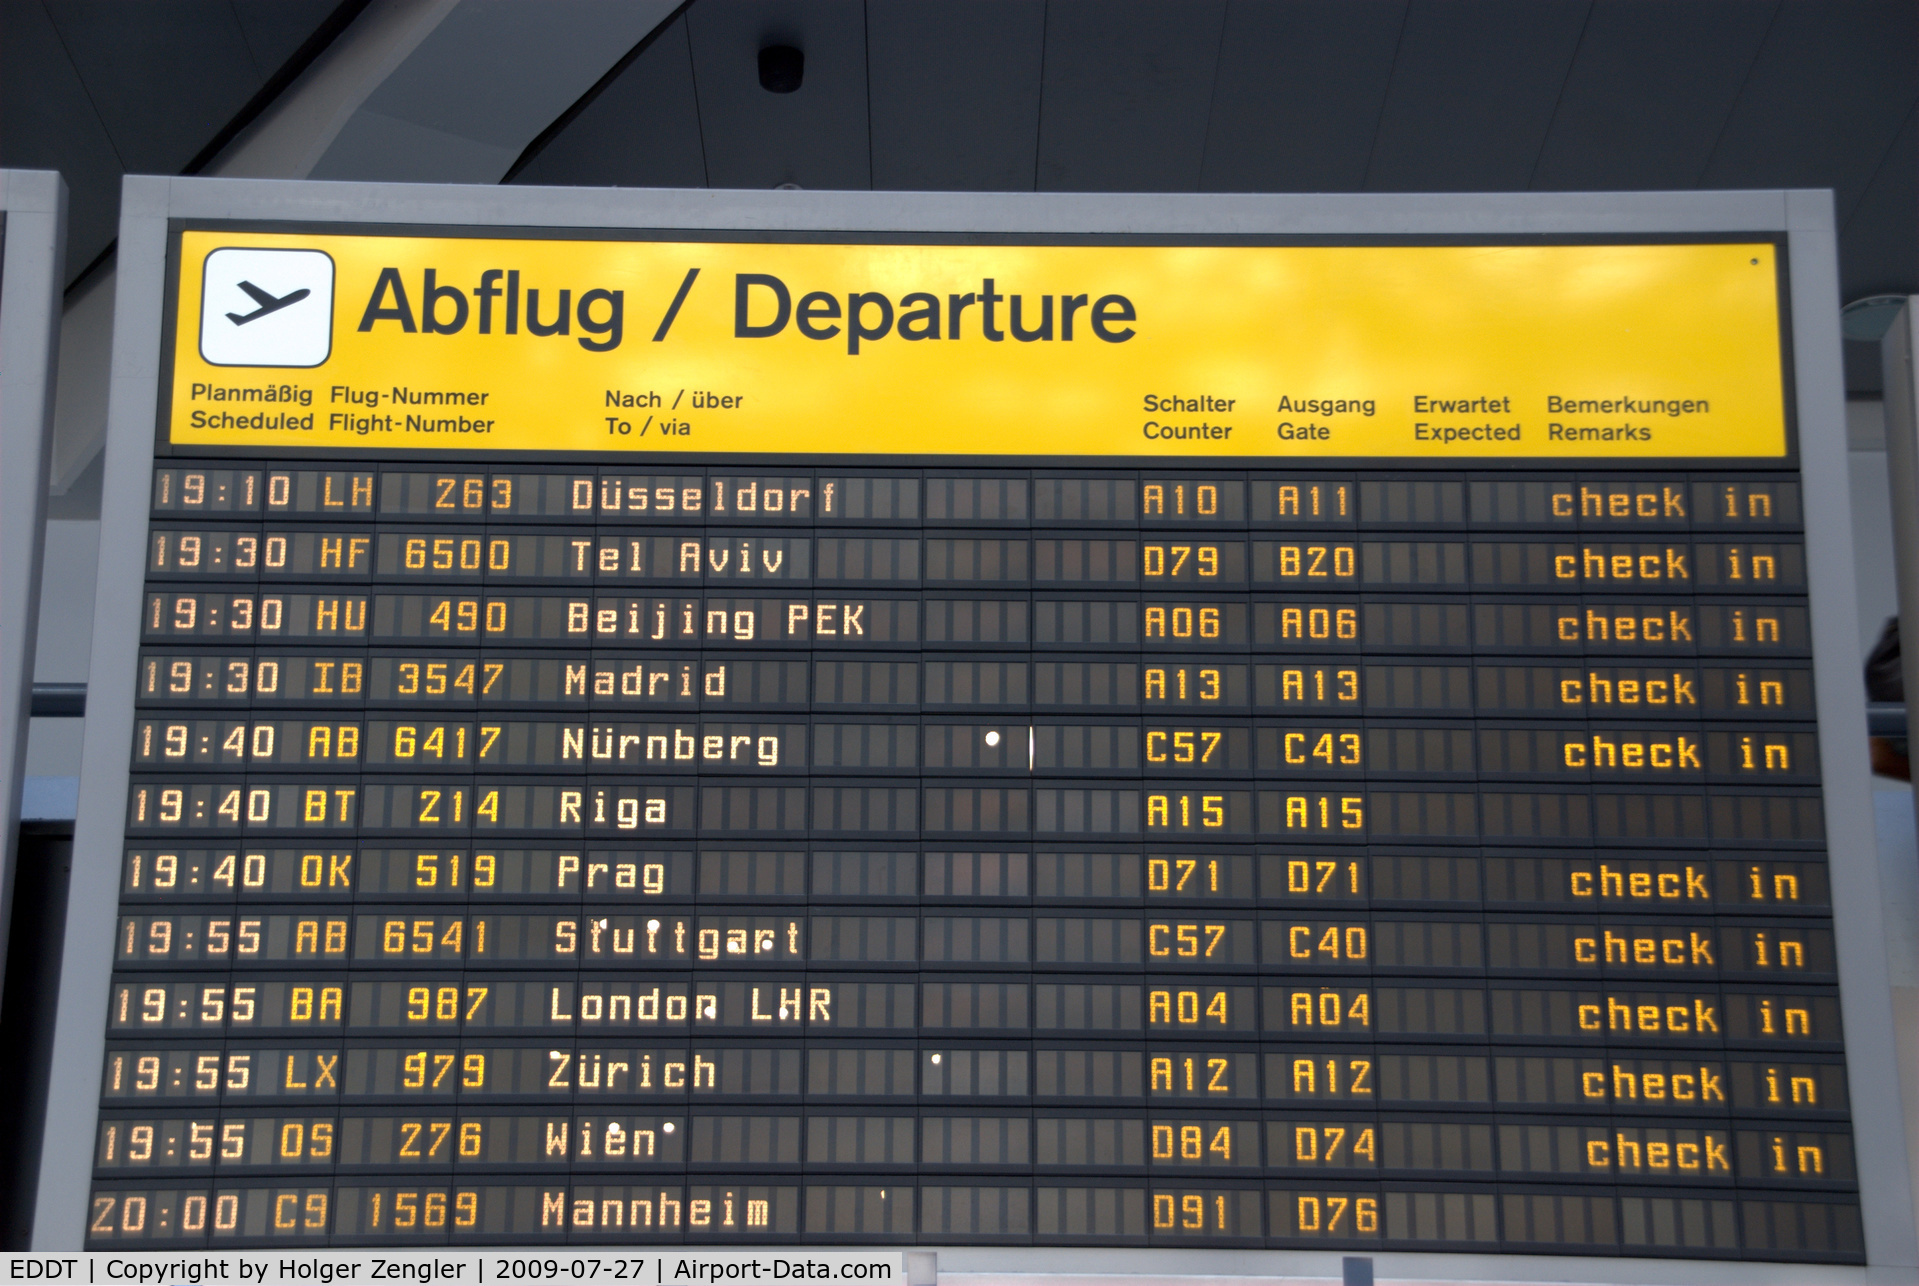 Tegel International Airport (closing in 2011), Berlin Germany (EDDT) - Departures to.....